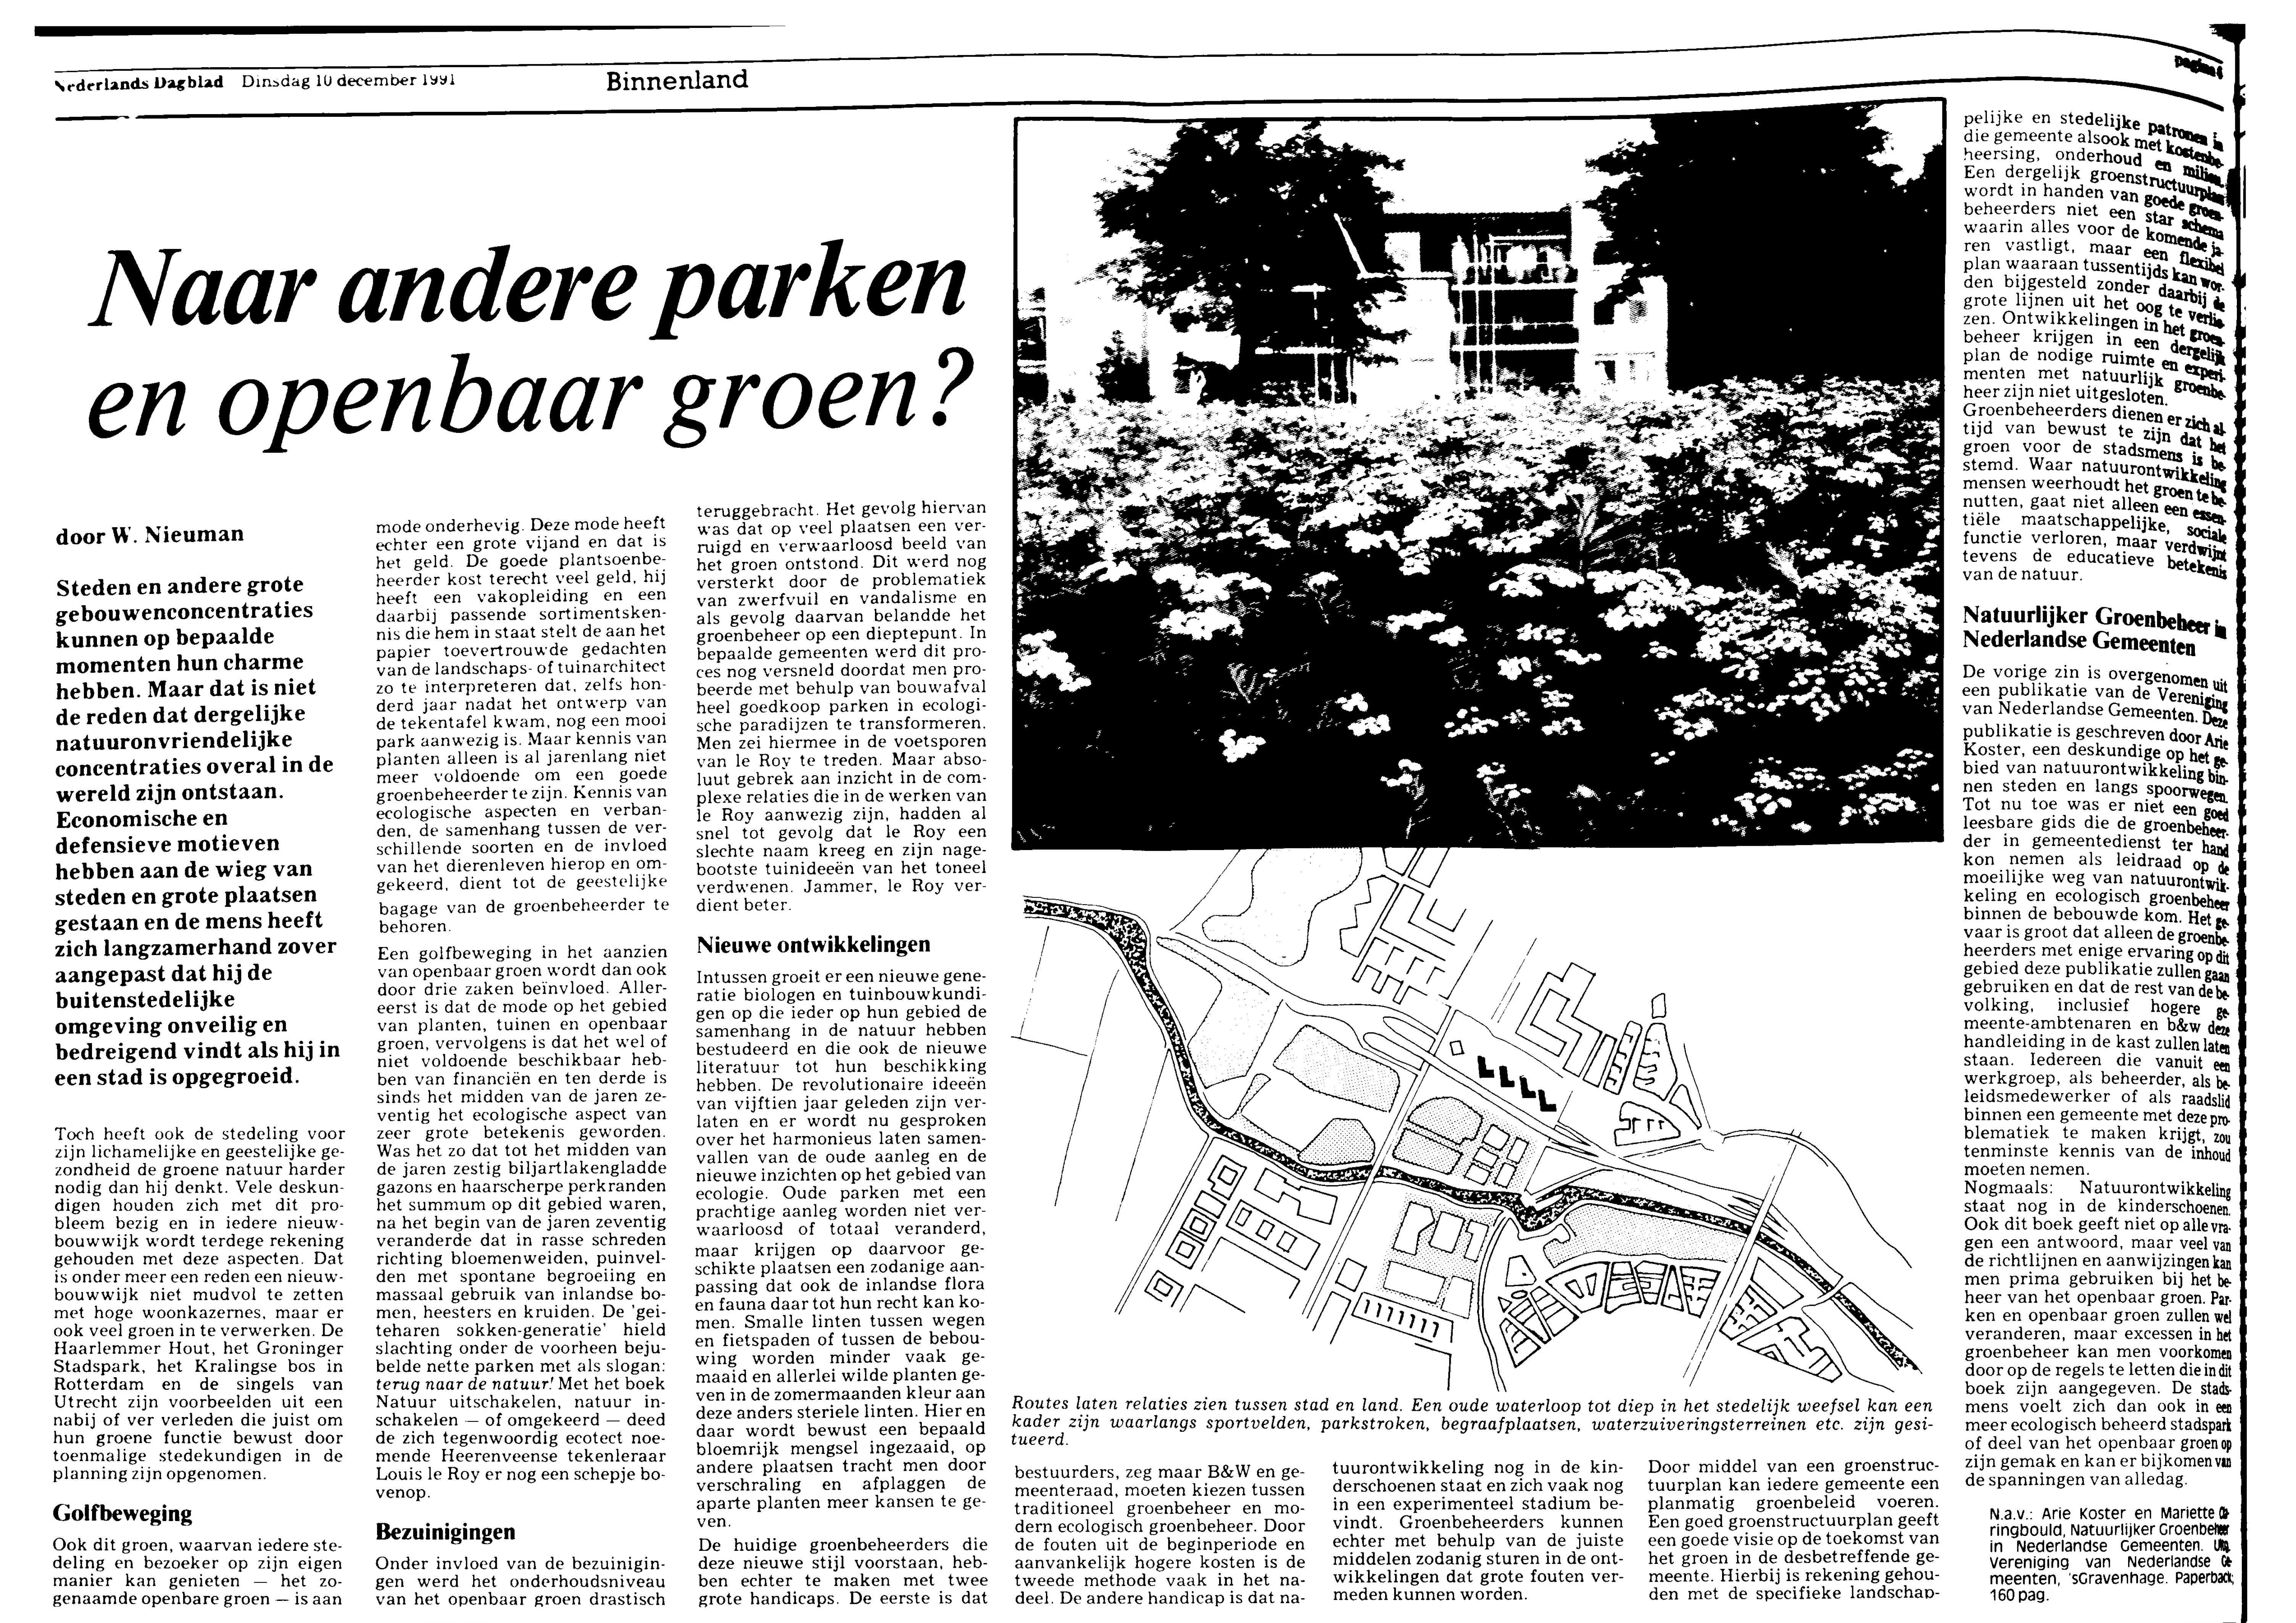 10-12-1991; nr. 11961; jrg. 48; ed. Dag bezitskenmerk Nederlands Dagblad